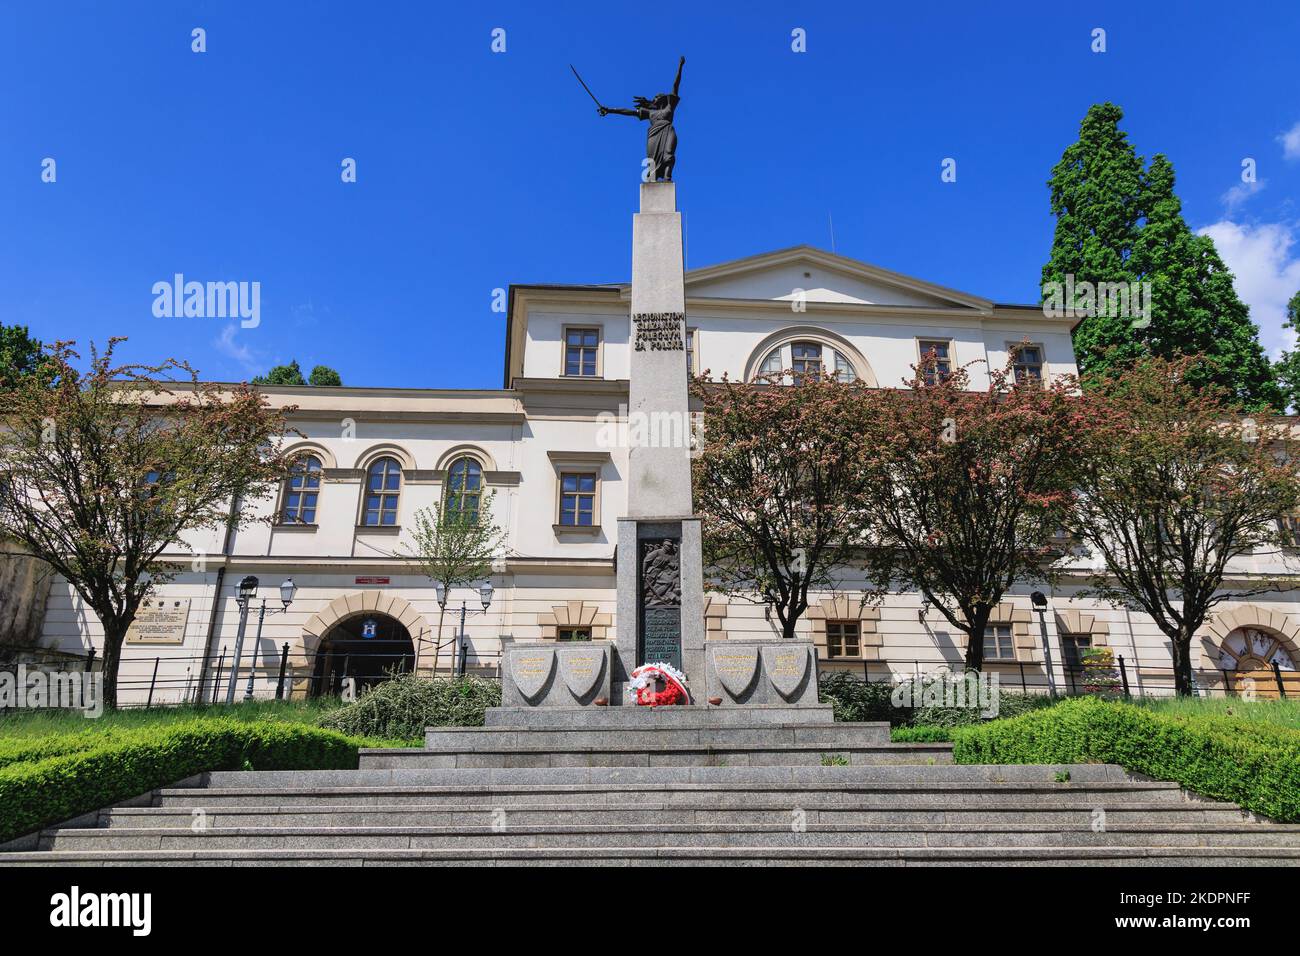 Monument en l'honneur des légionnaires silésiens tombés pour la Pologne devant le château de Cieszyn, bastion gothique-renaissance de la ville de Cieszyn en Pologne Banque D'Images